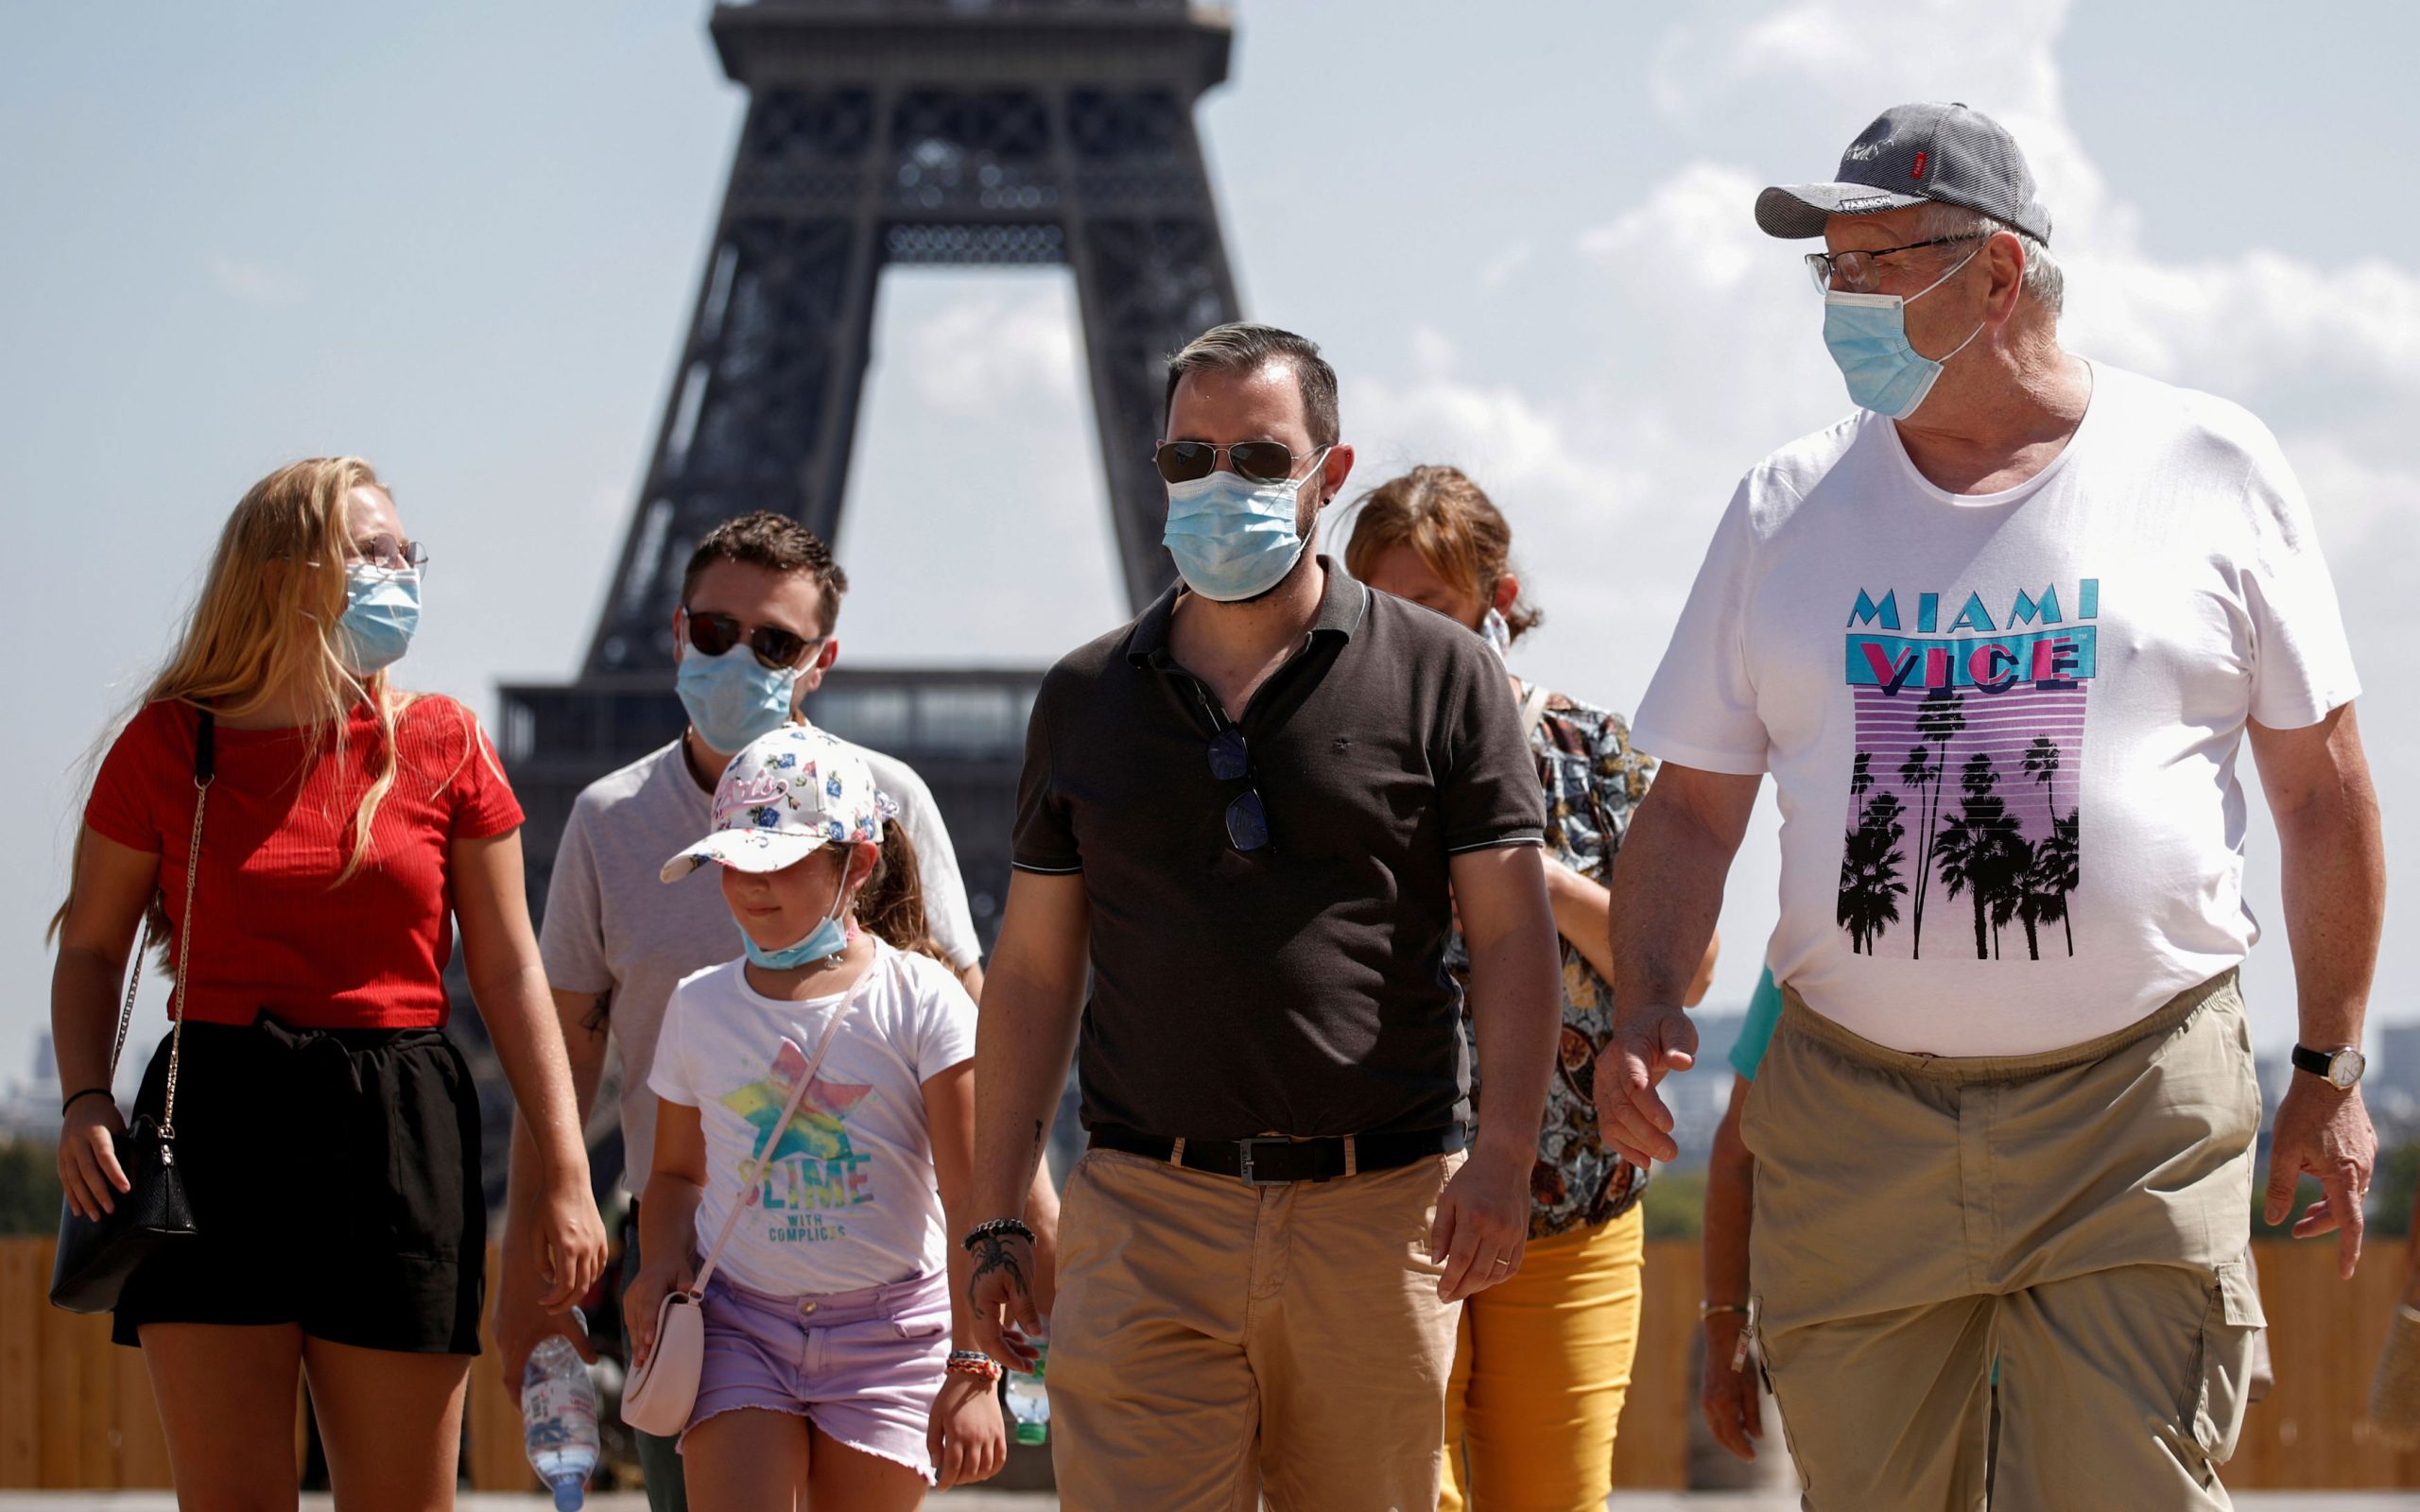 Υποχρεωτική πλέον η χρήση μάσκας στα πιο πολυσύχναστα σημεία του Παρισιού